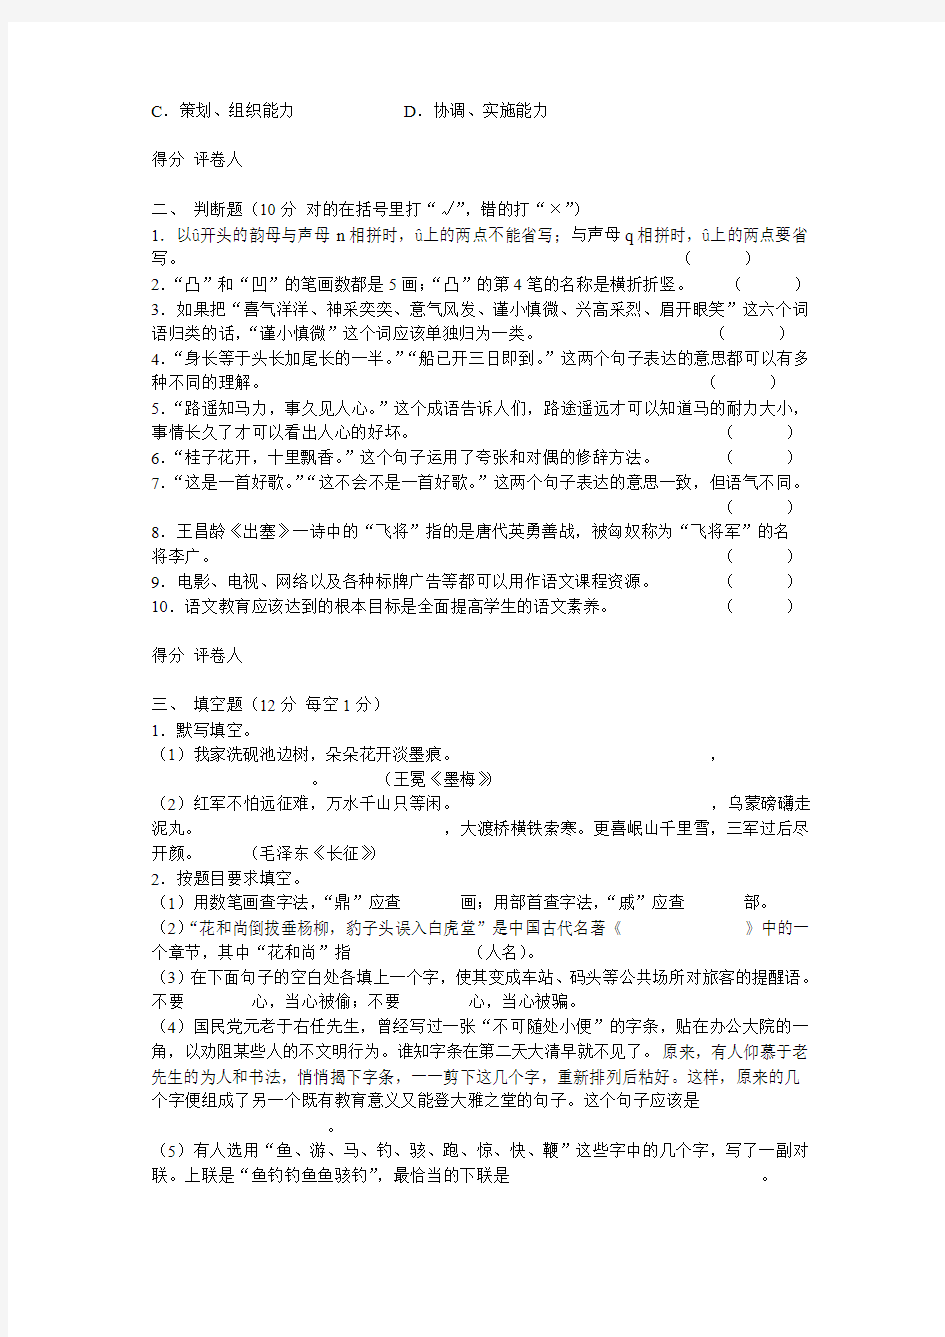 1 湘潭市2006年中、小学教师业务理论考试小学语文试卷-附答案